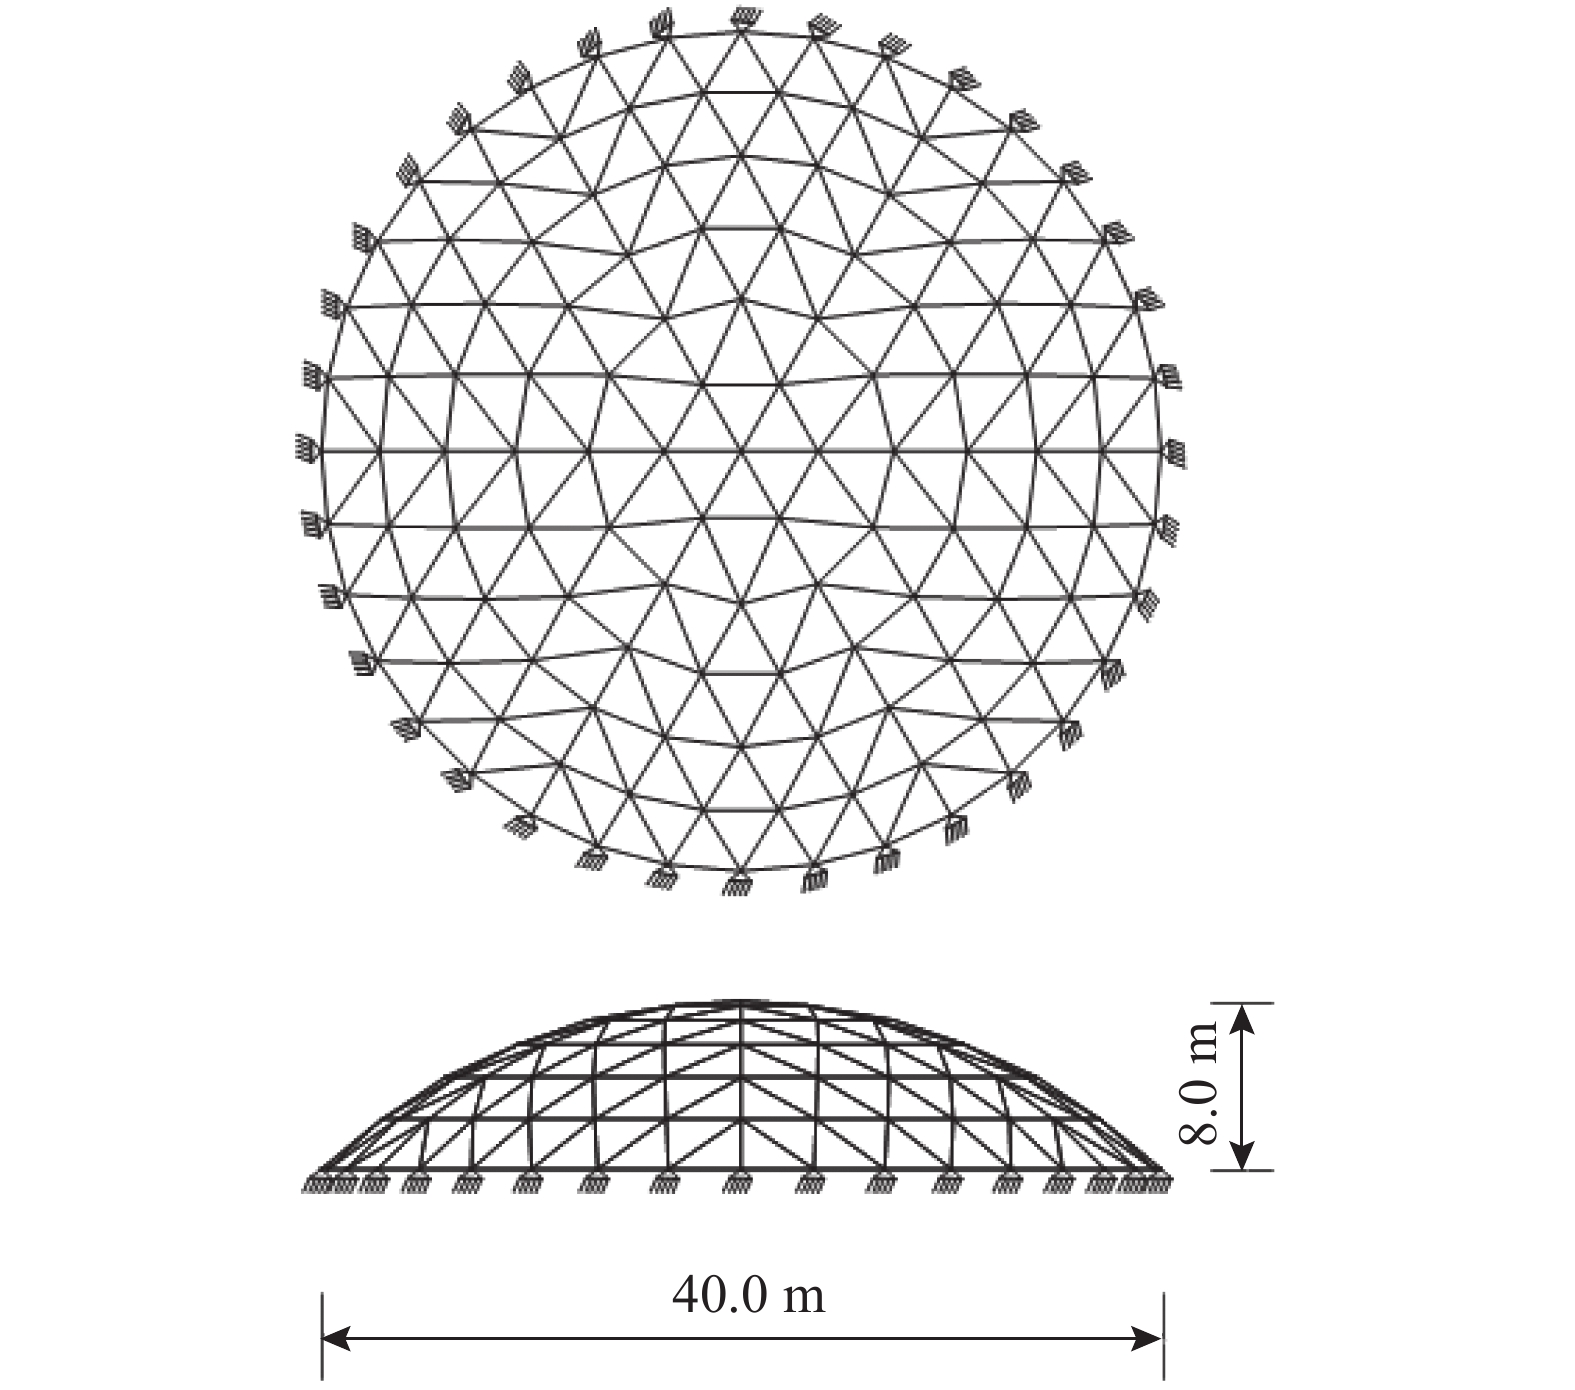 基于节点构形度均衡化的单层网壳结构优化设计研究